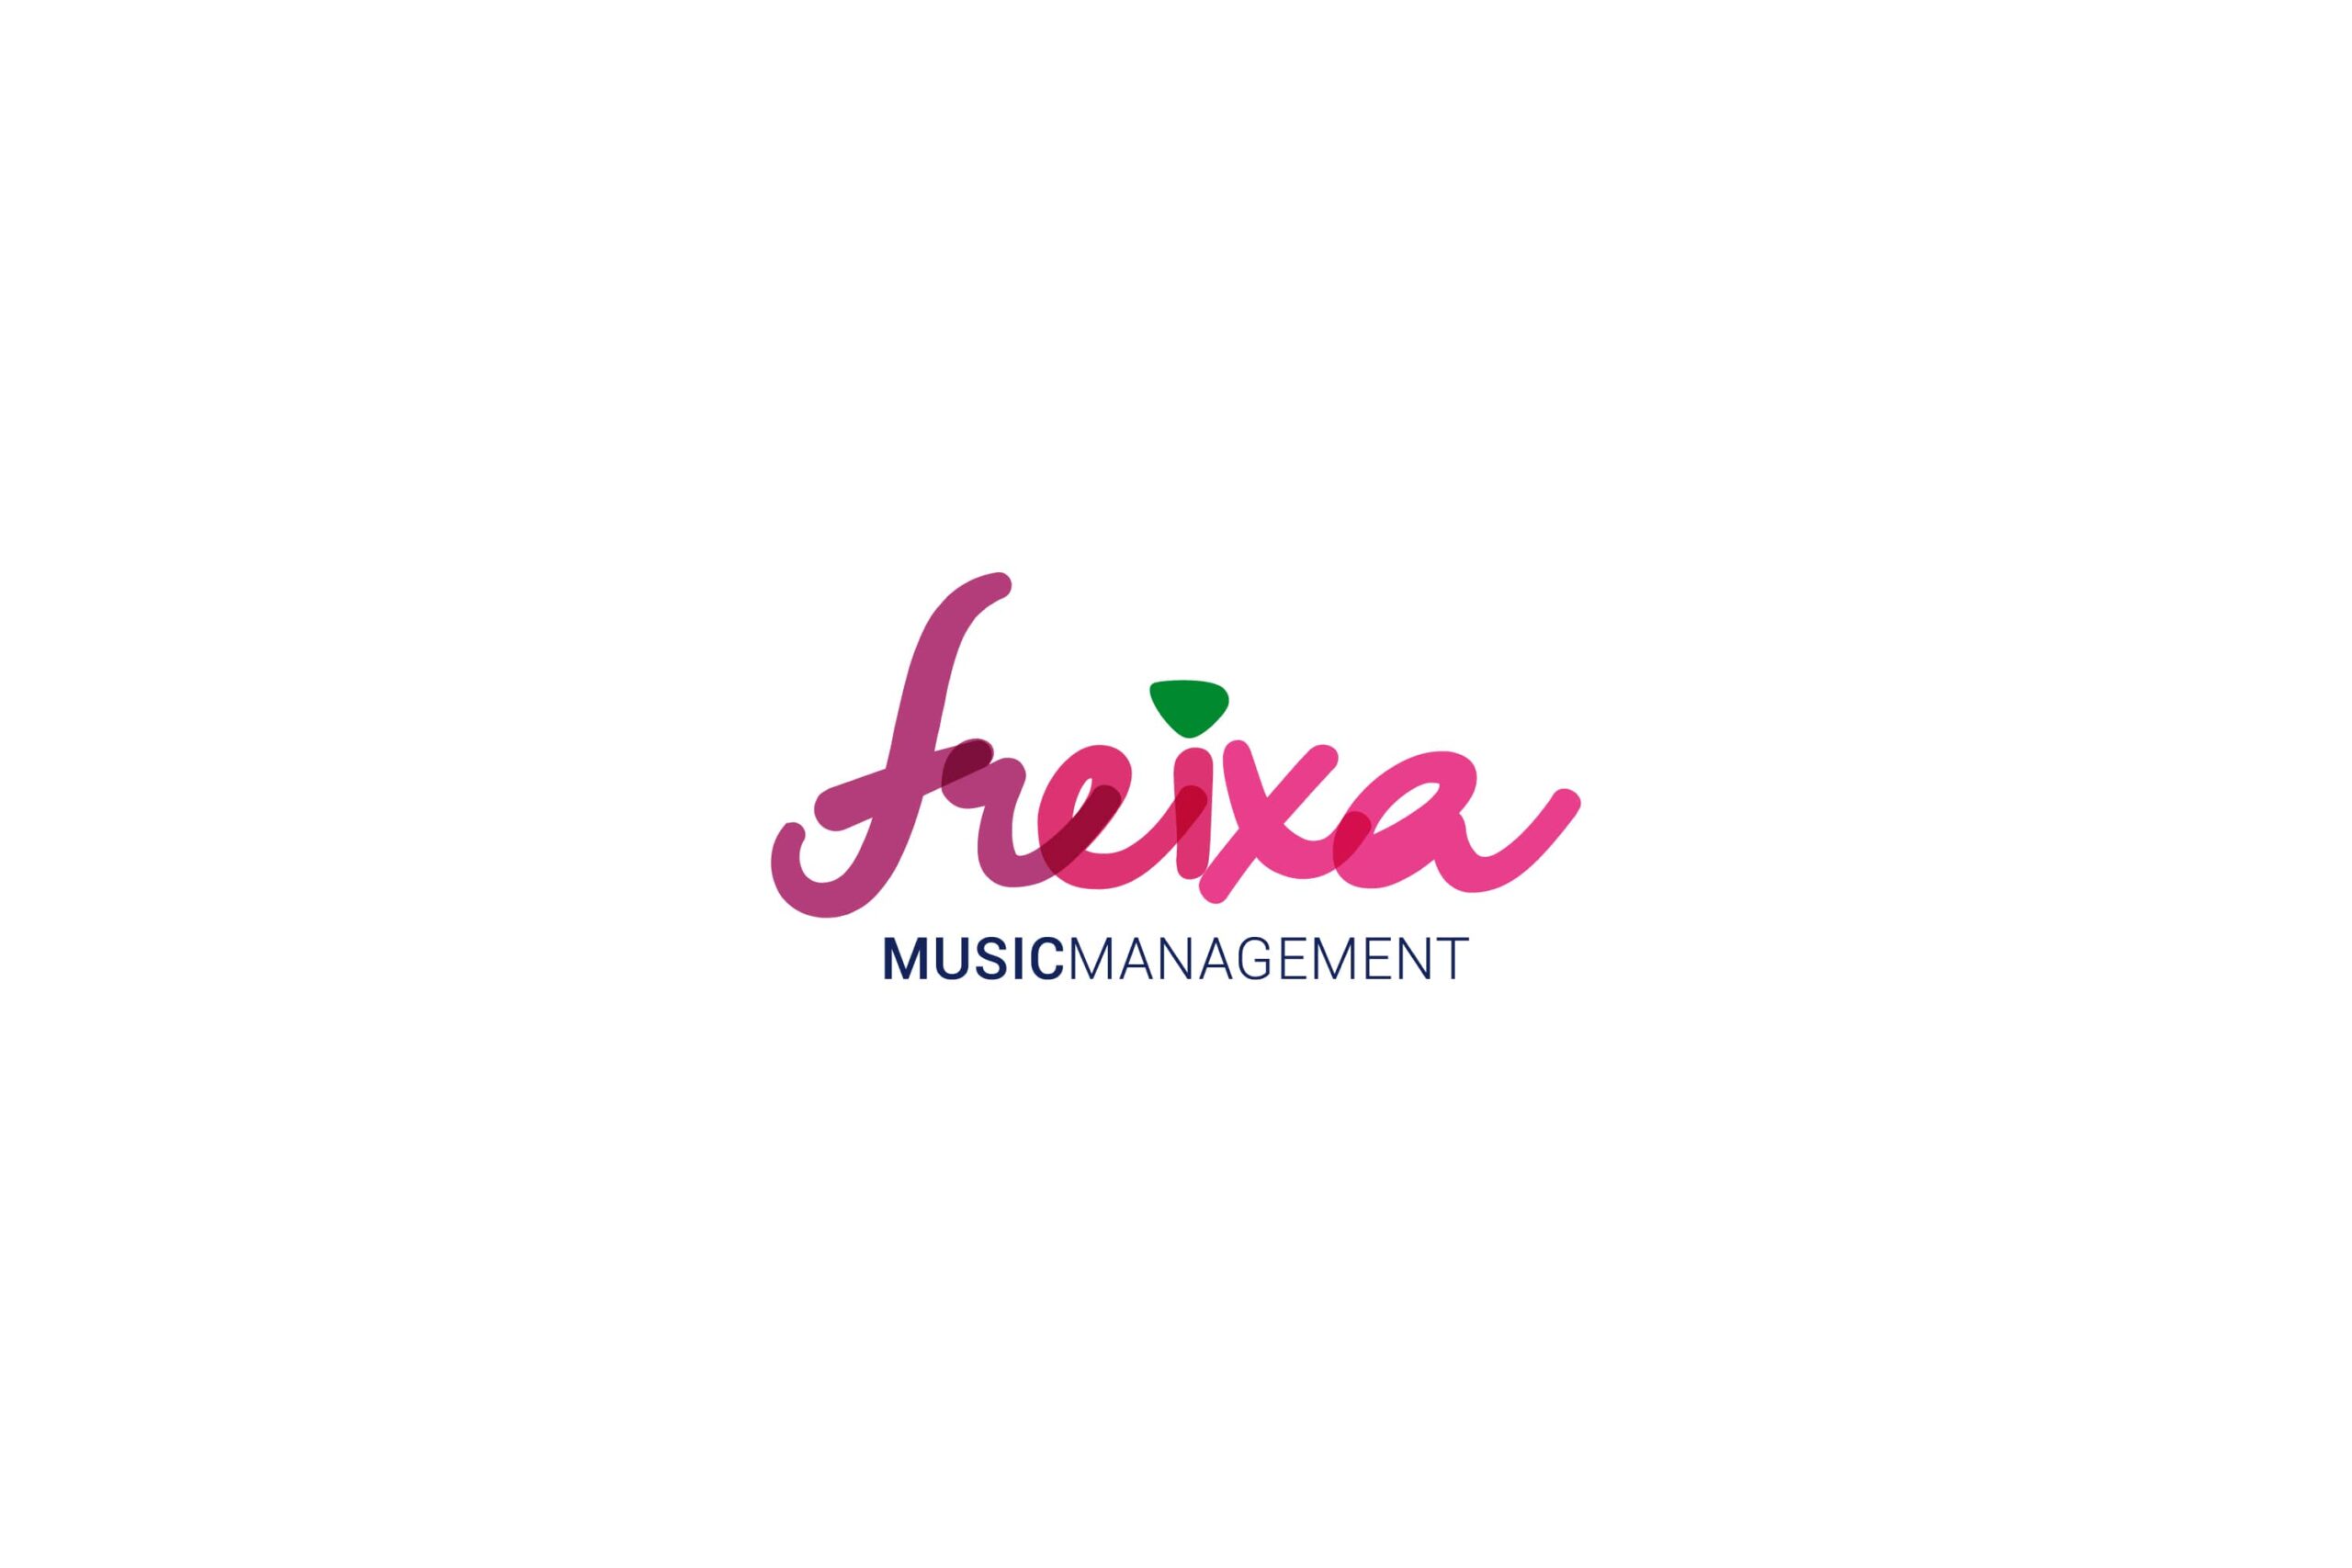 Logotipo Freixa Music rosa sobre papel blanco branding por The Acctitude